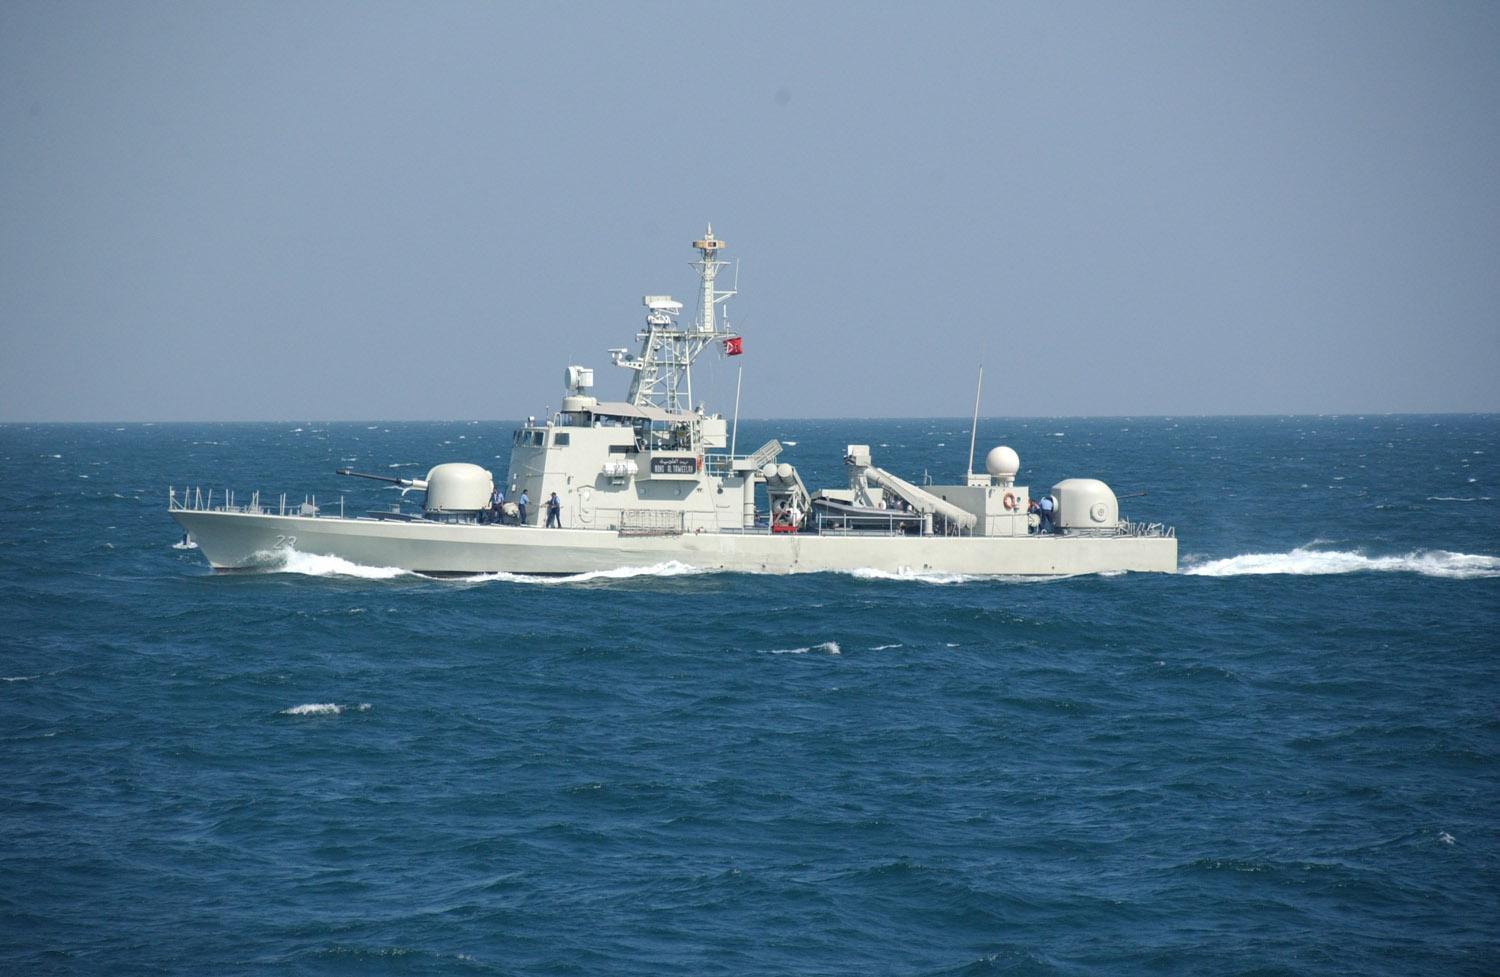 The Royal Bahrain Navy’s Al Taweelah